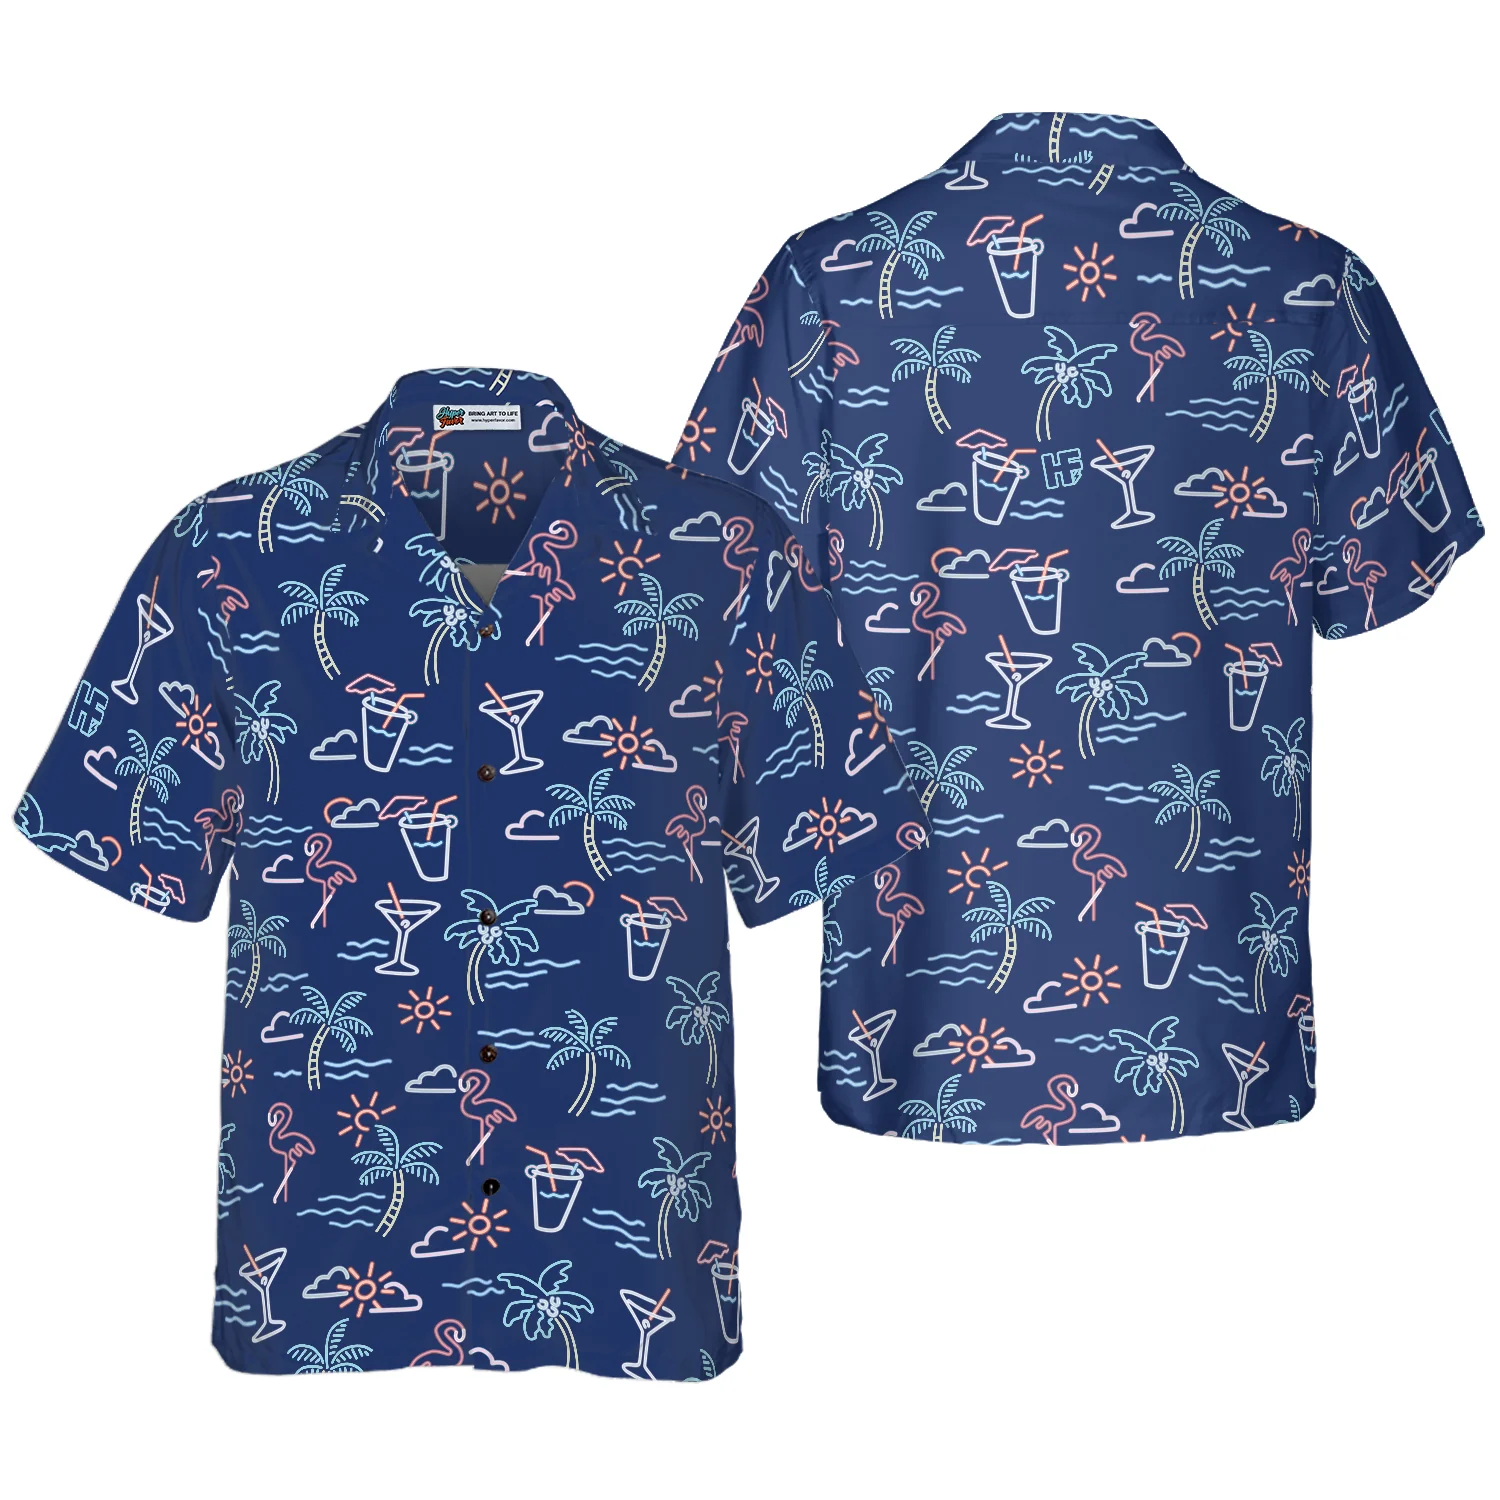 Beach Party Tropical Flamingo Hawaiian Shirt Aloha Shirt For Men and Women